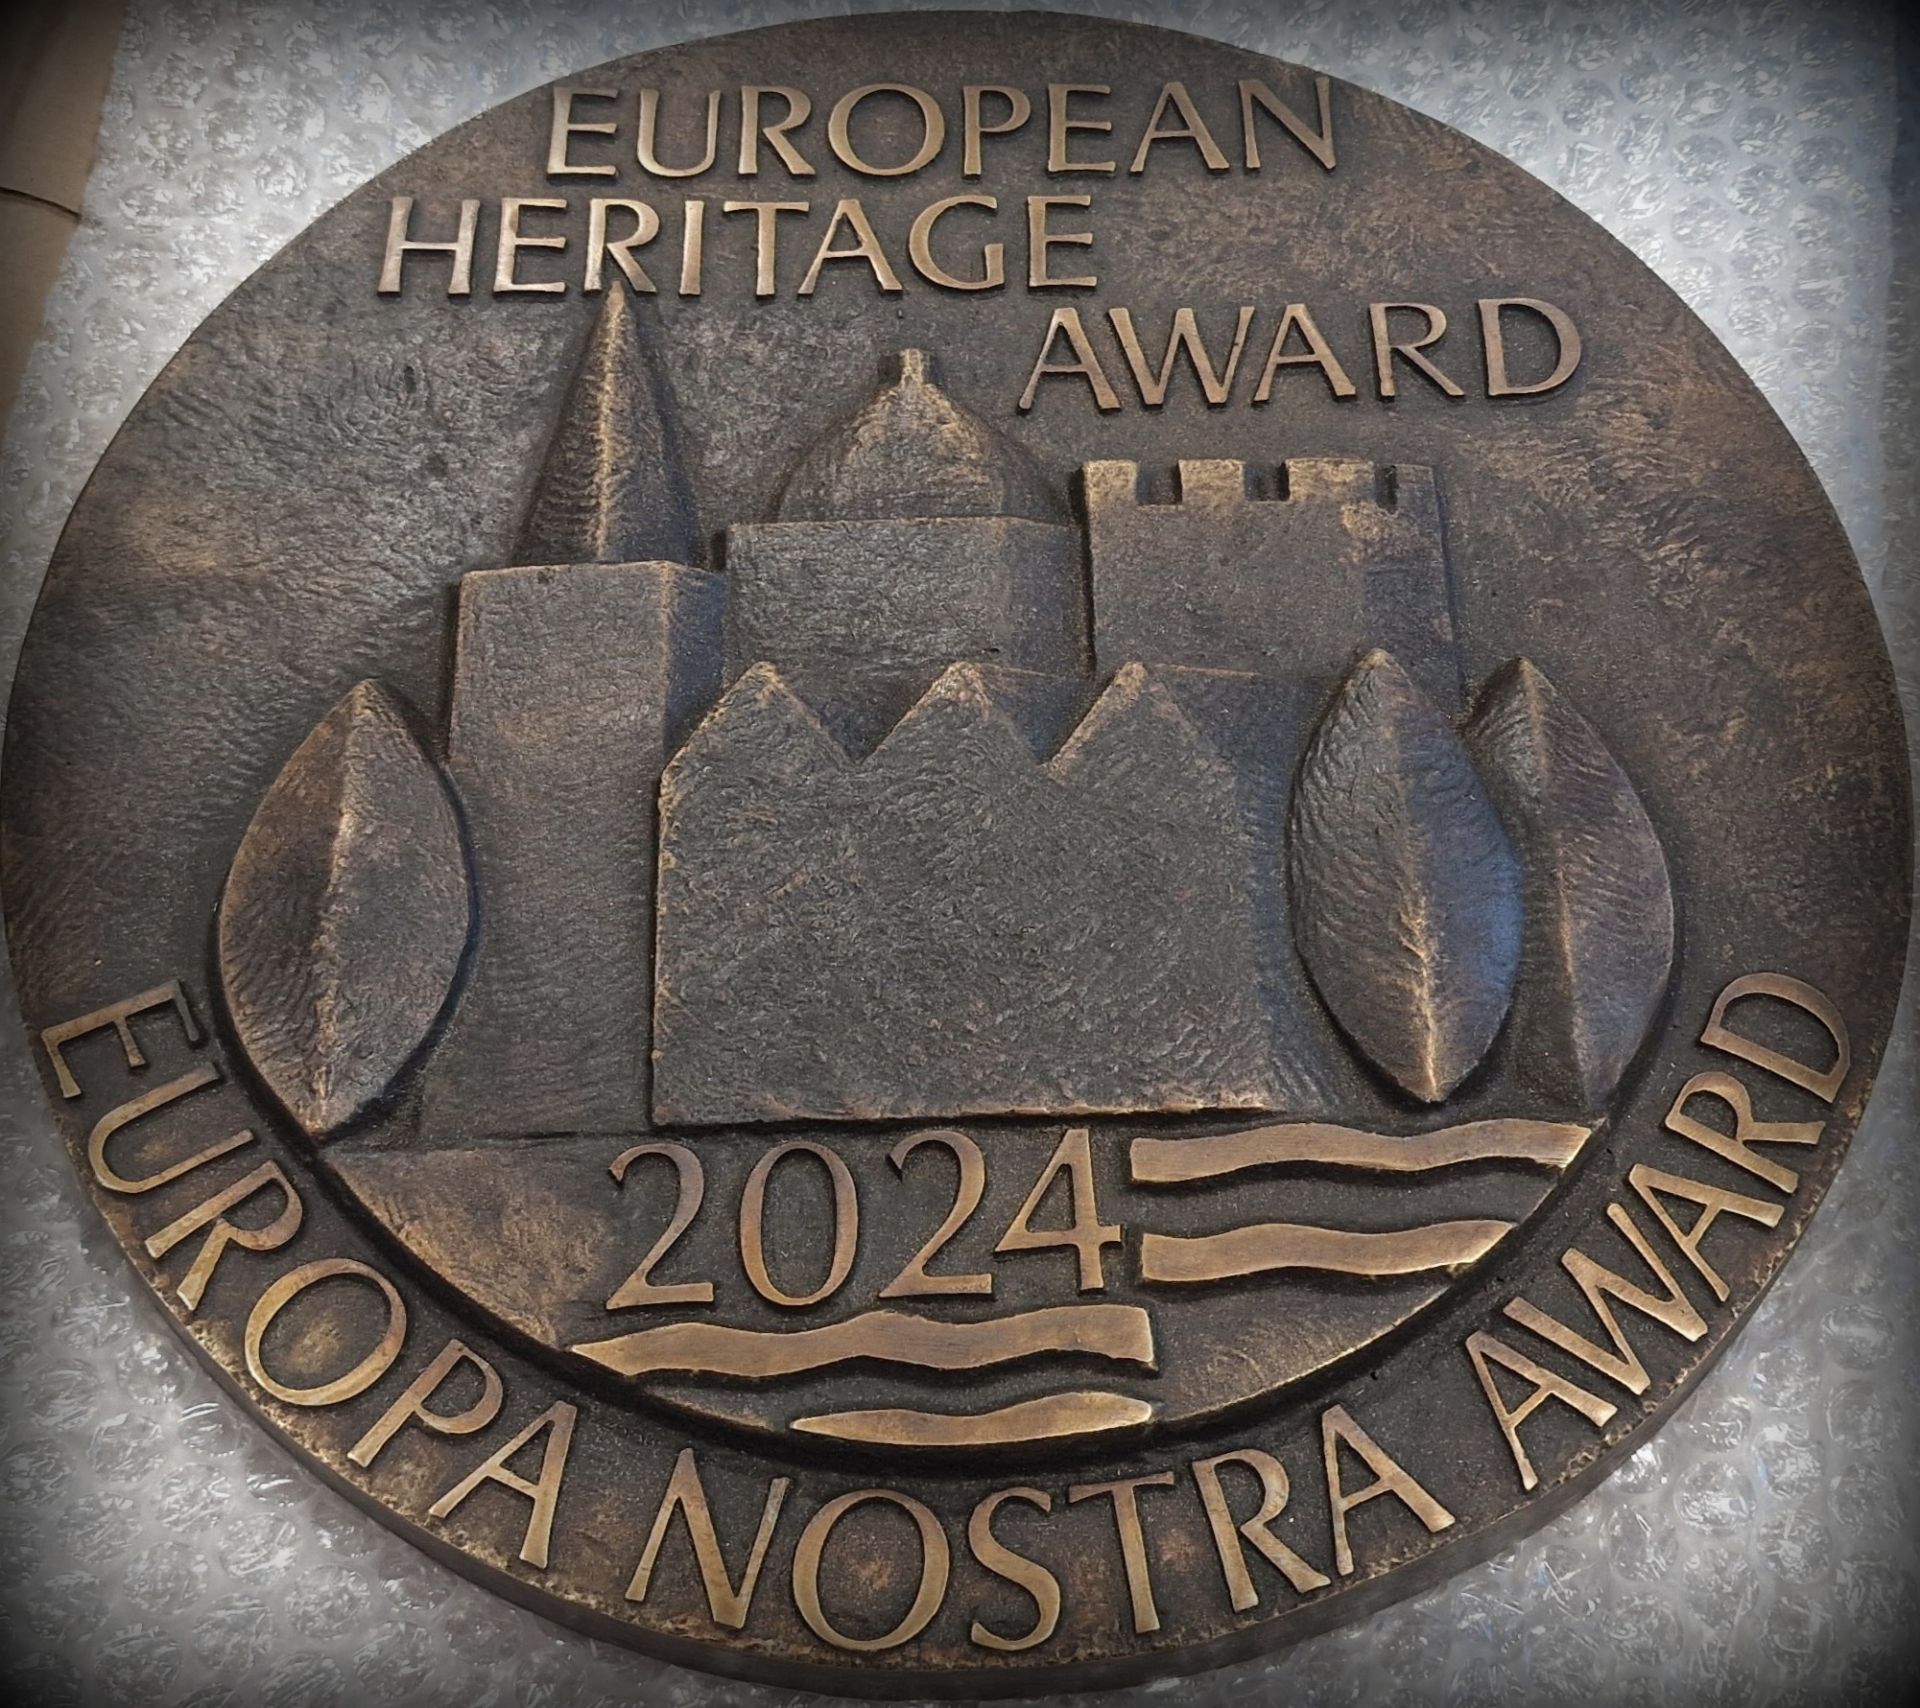 Europa Nostra Award to prestiżowa nagroda